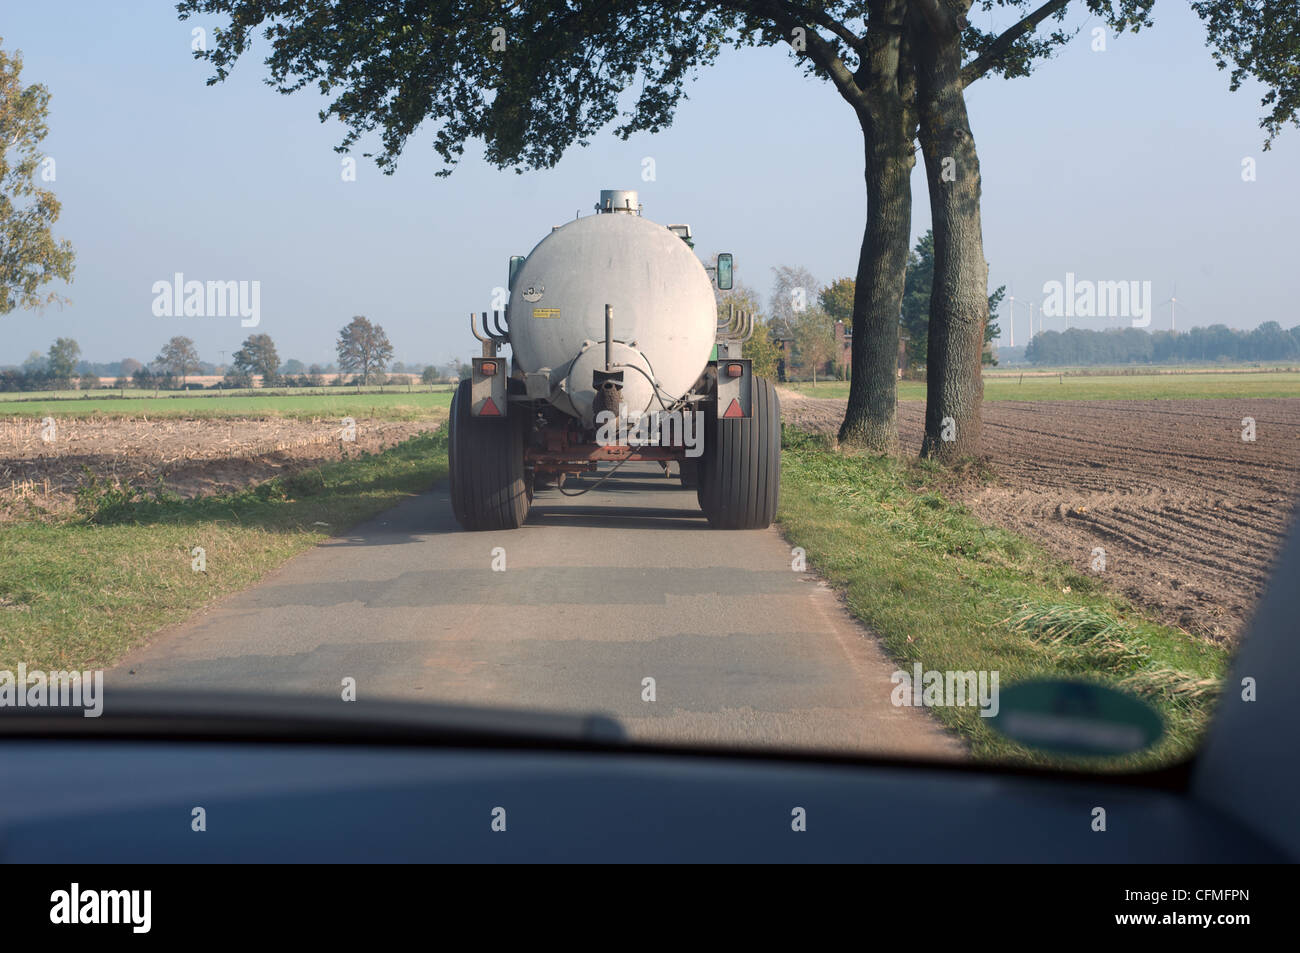 Movimiento lento del vehículo agrícola en un estrecho camino rural Foto de stock